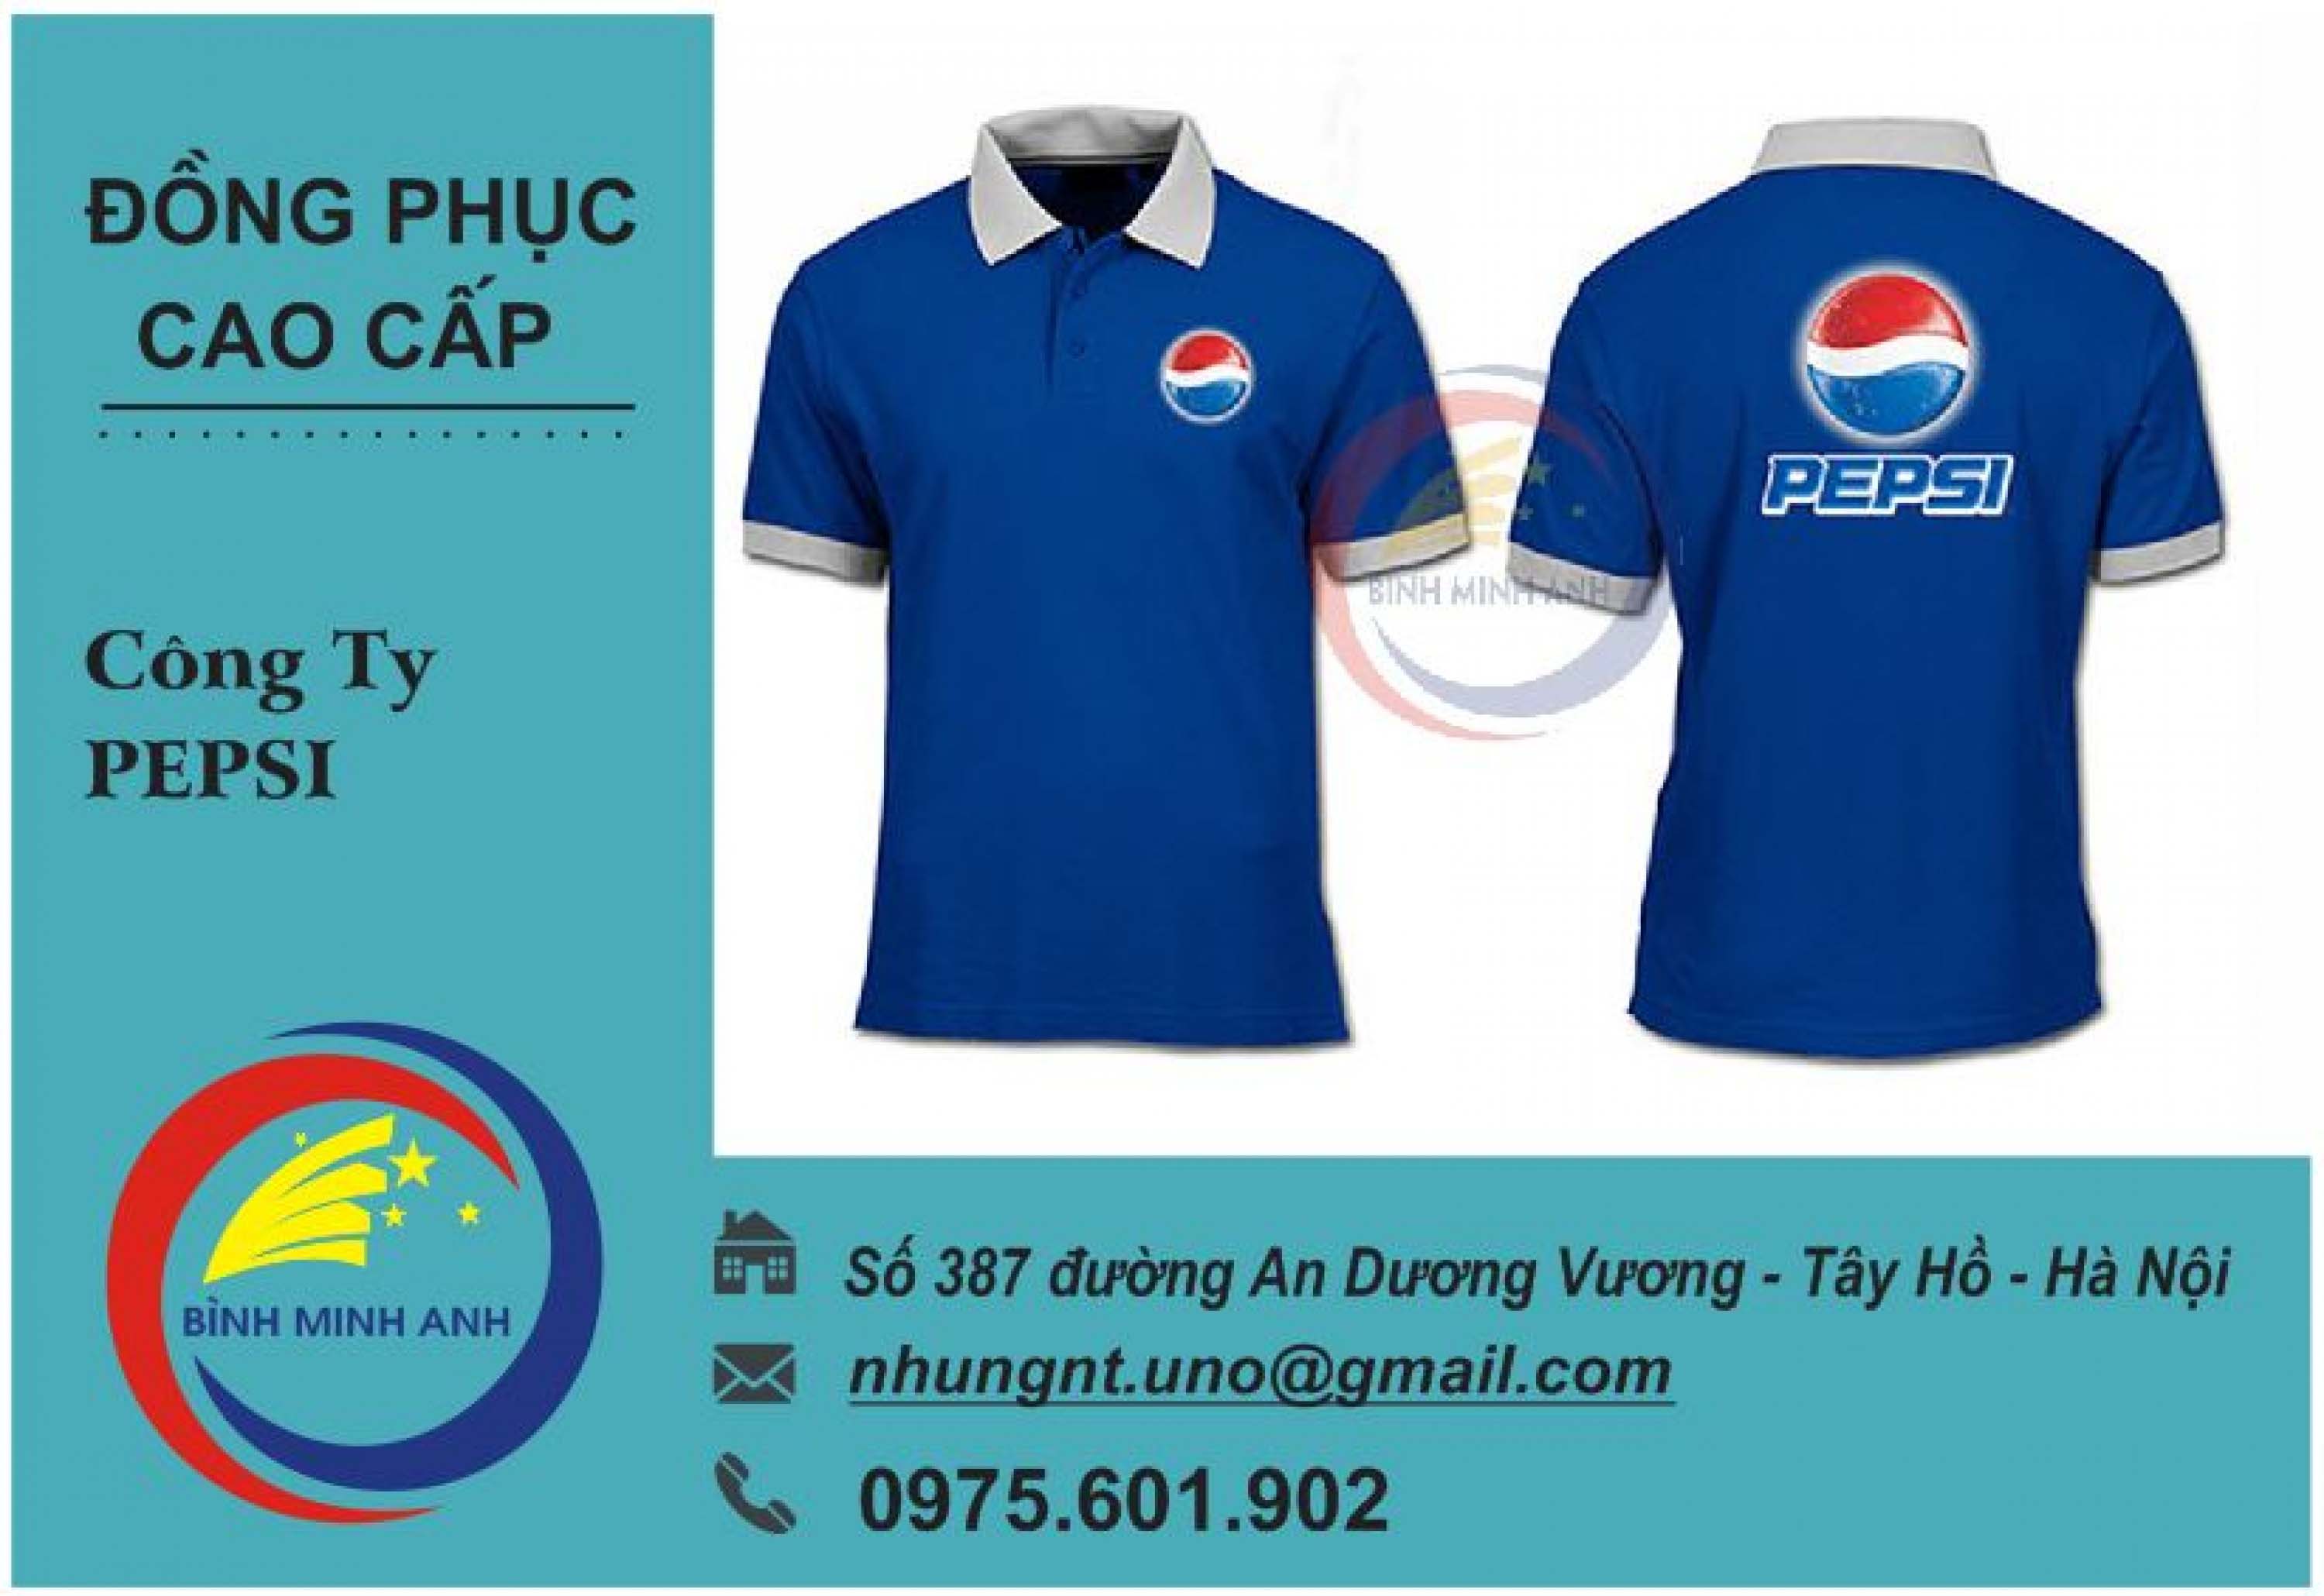 Đồng phục công ty Pepsi